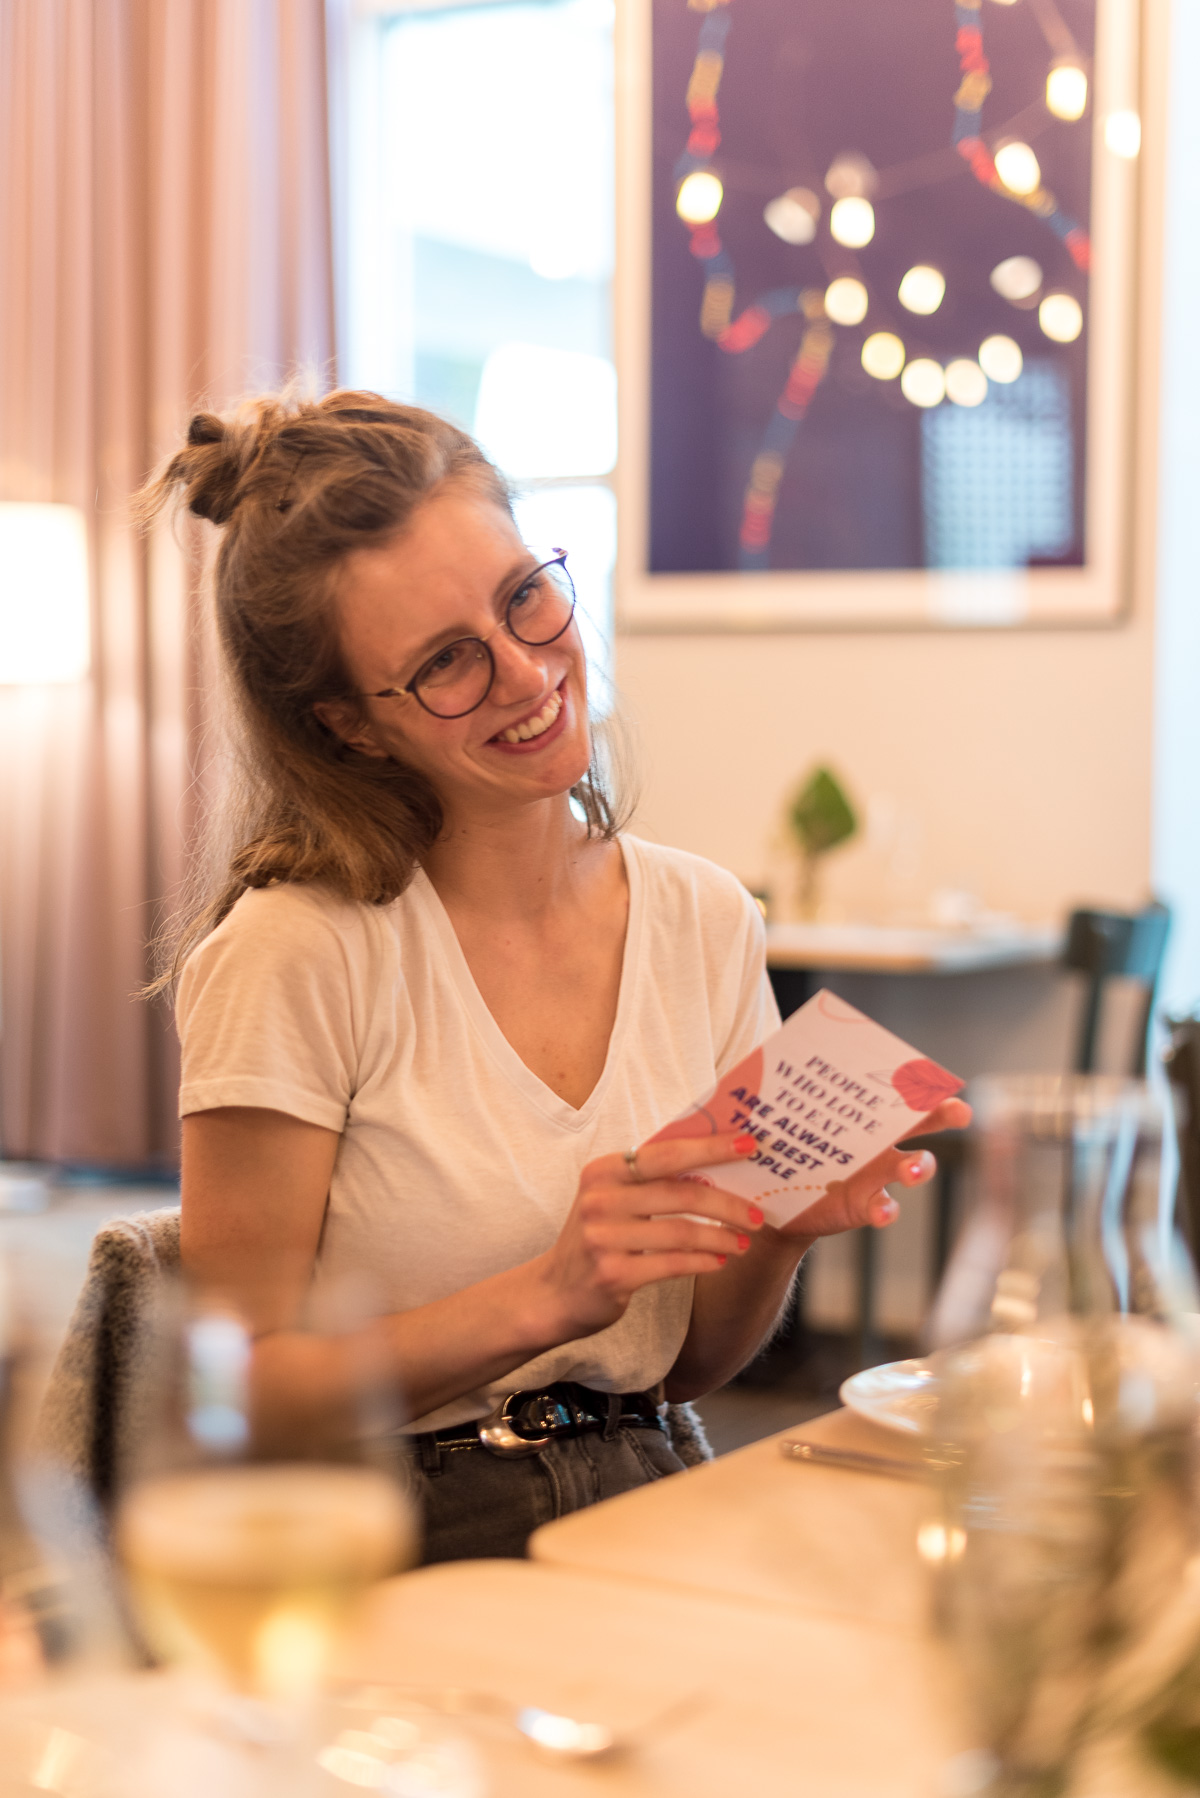 Frau sitzt an einem Tisch und lächelt und hält eine Postkarte in der Hand.